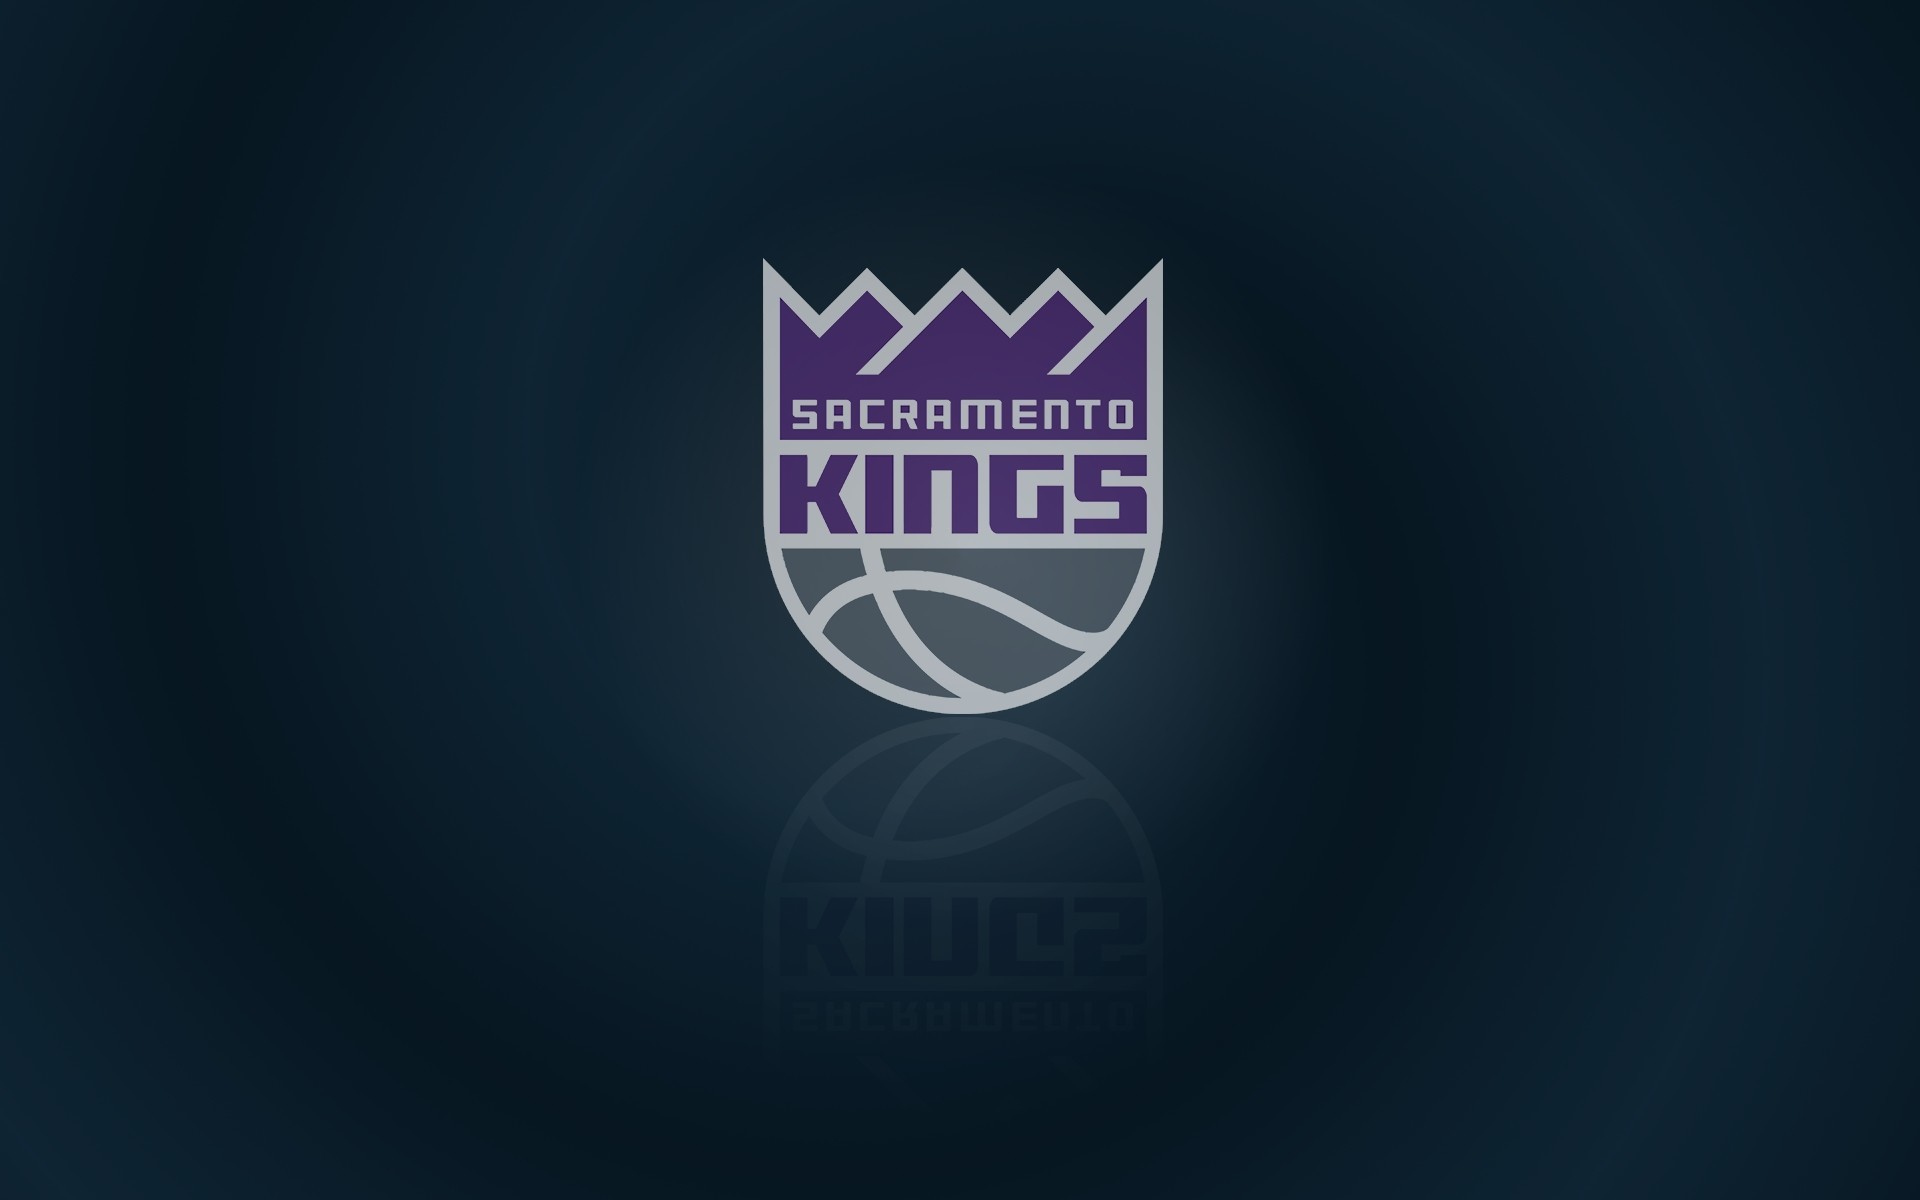 1920x1200 Sacramento Kings wallpaper and logo , widescreen 16x10 